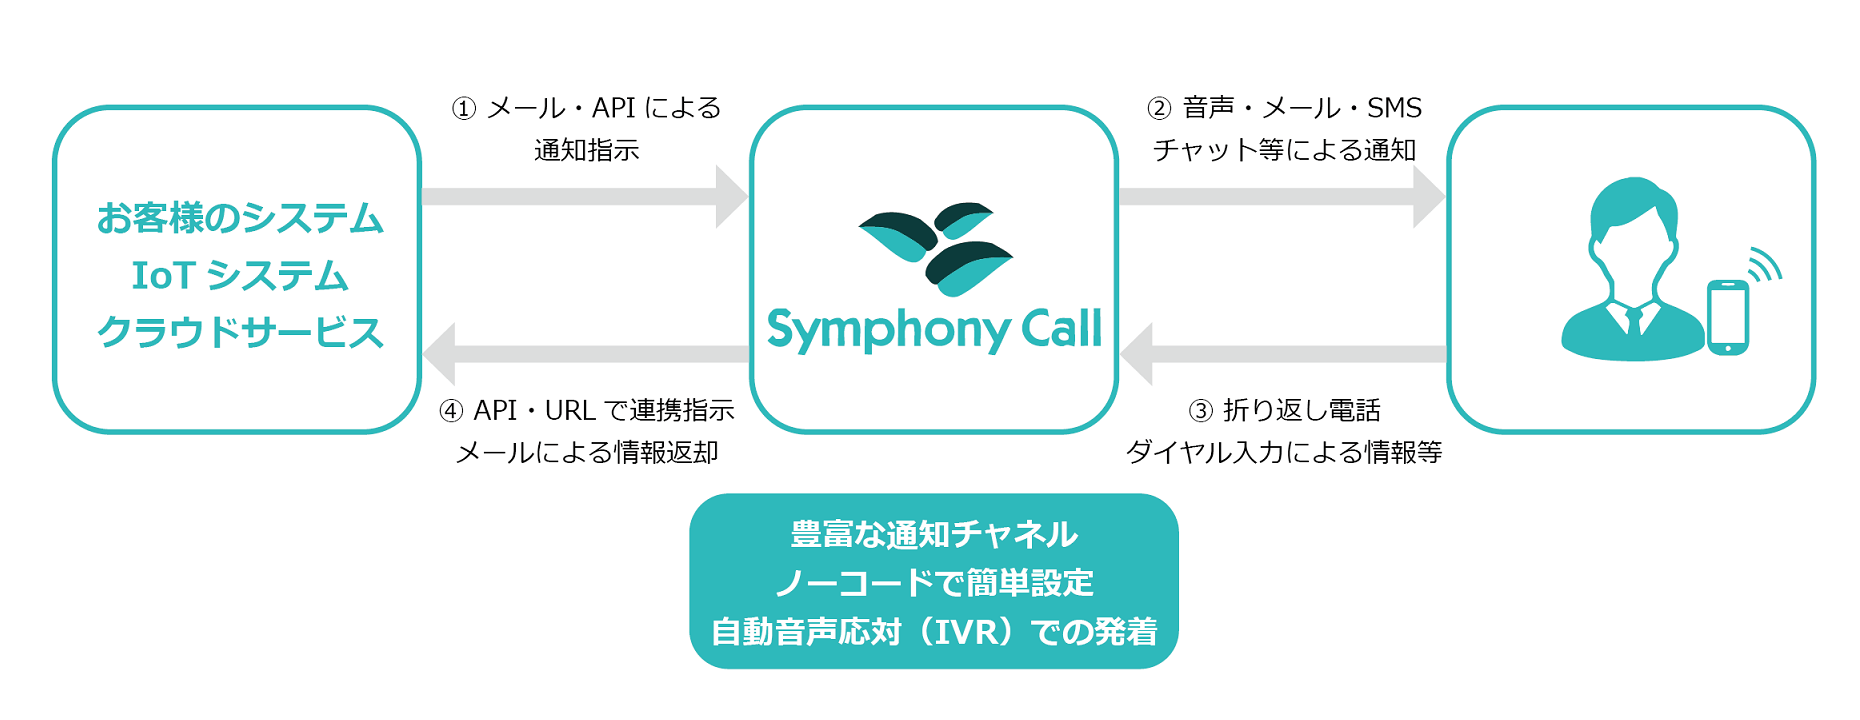 既存システムやIoTデバイス、クラウドサービス等からメール・APIによる通知をSymphony Callに指示。その後、Symphony Callが音声・メール・SMS・チャットで担当者または顧客への通知。折り返し電話、ダイヤル入力による情報連携があったらSymphony Callがお客様のシステムへAPI・URLで連携指示をします。自動音声応対（IVR）にも対応。
                                